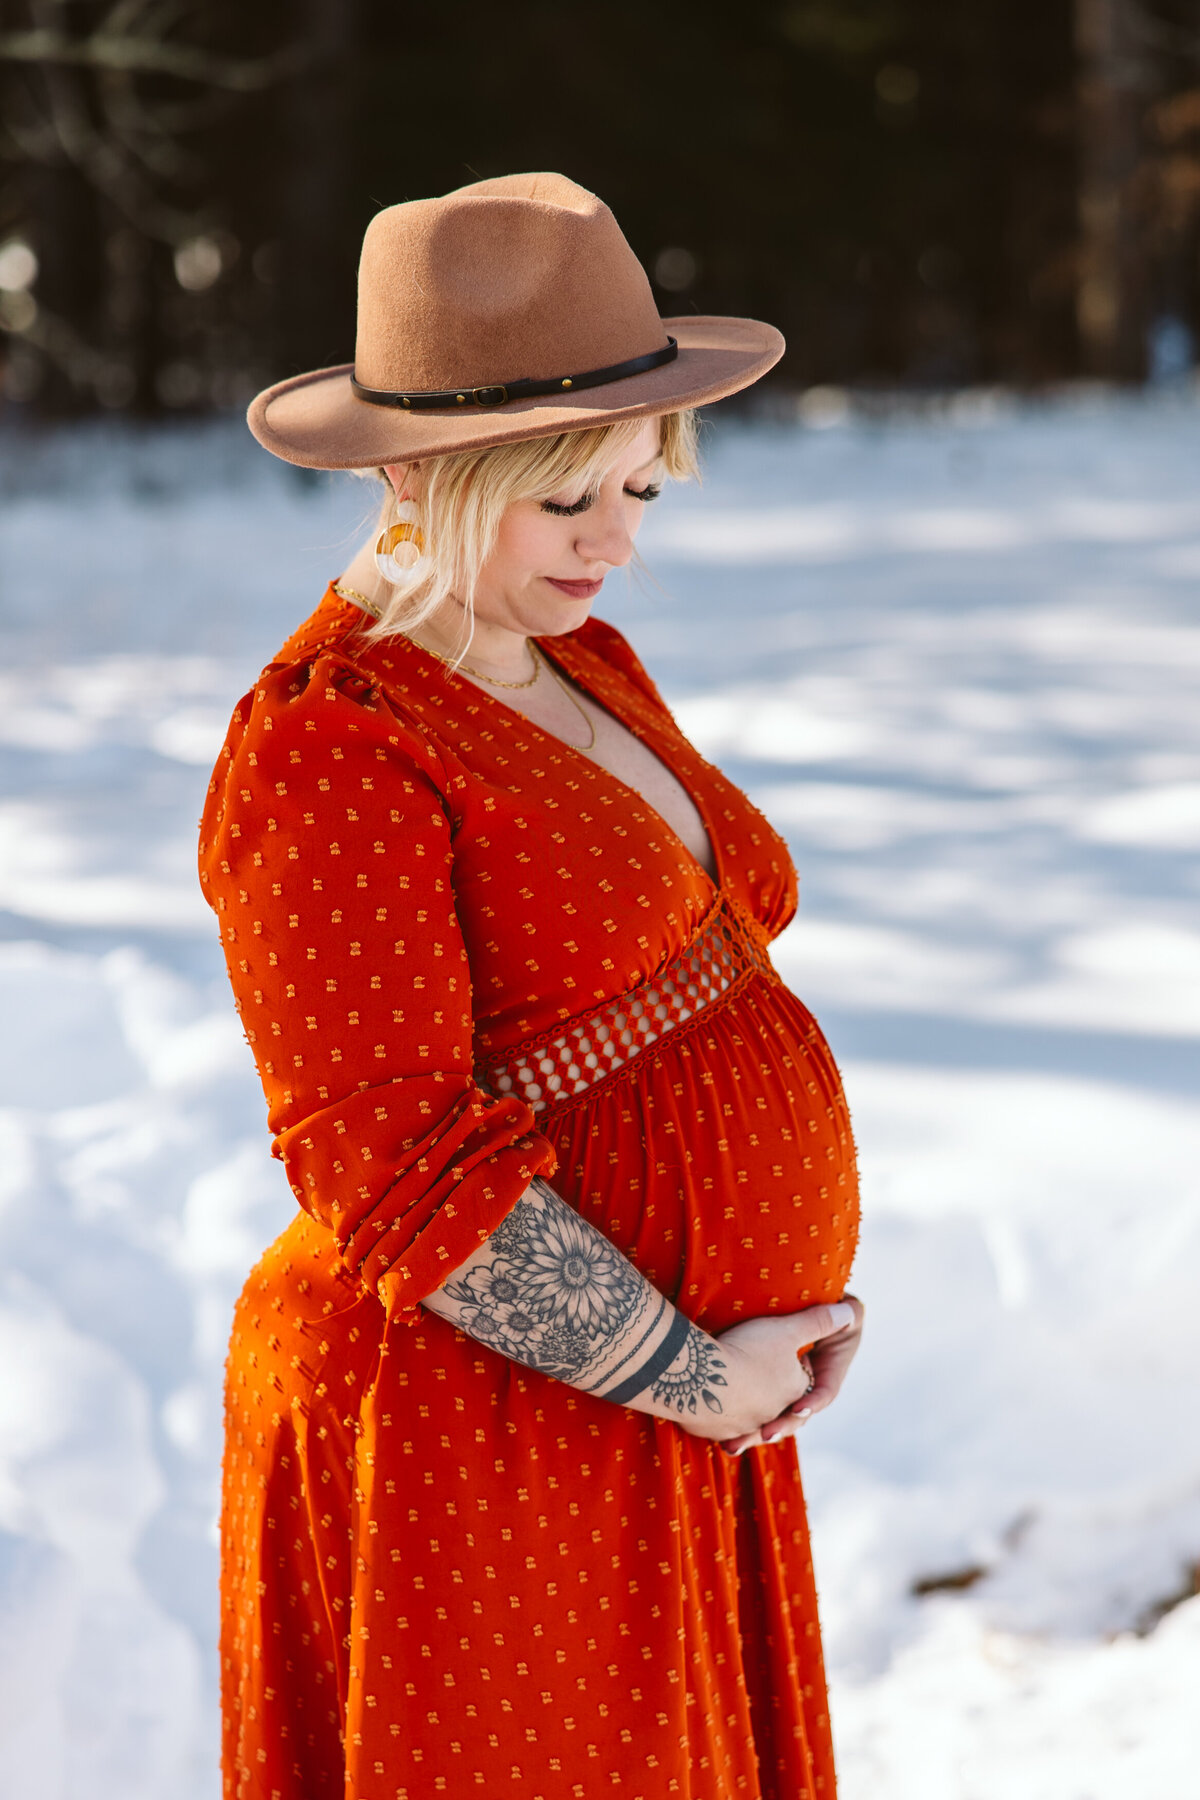 Minnesota-Alyssa Ashley Photography-Skajewski maternity session-23